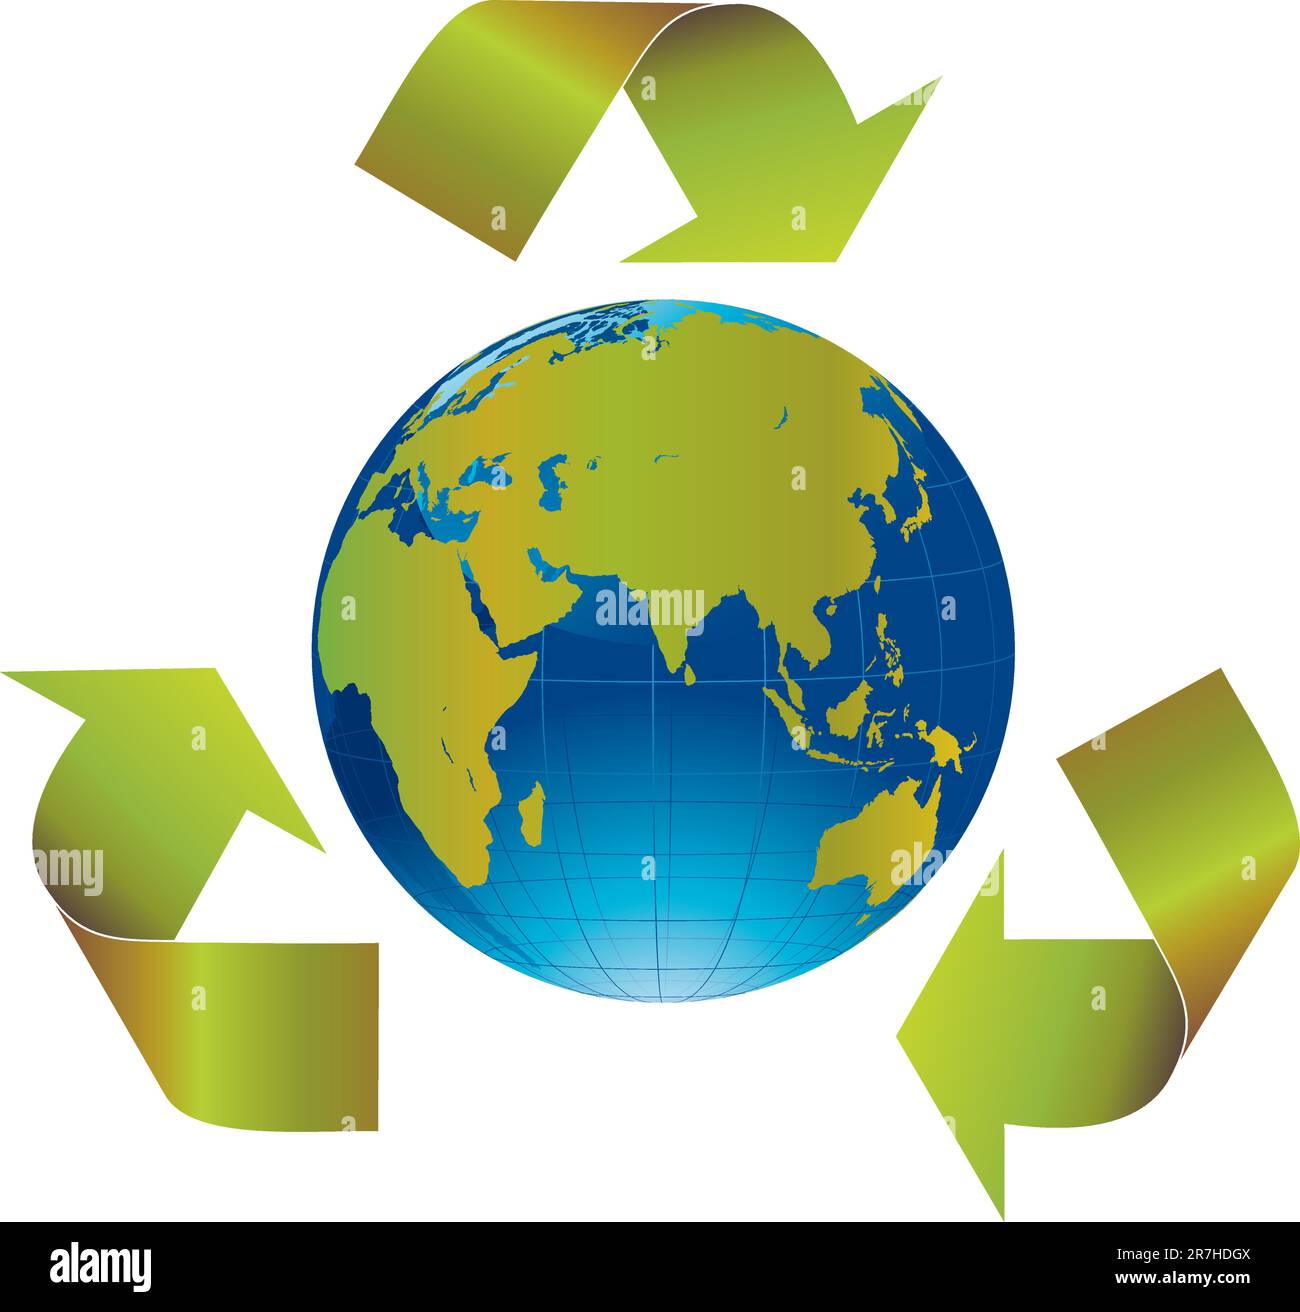 Grüne Pfeile auf der ganzen Welt zeigen Recycling an Stock Vektor